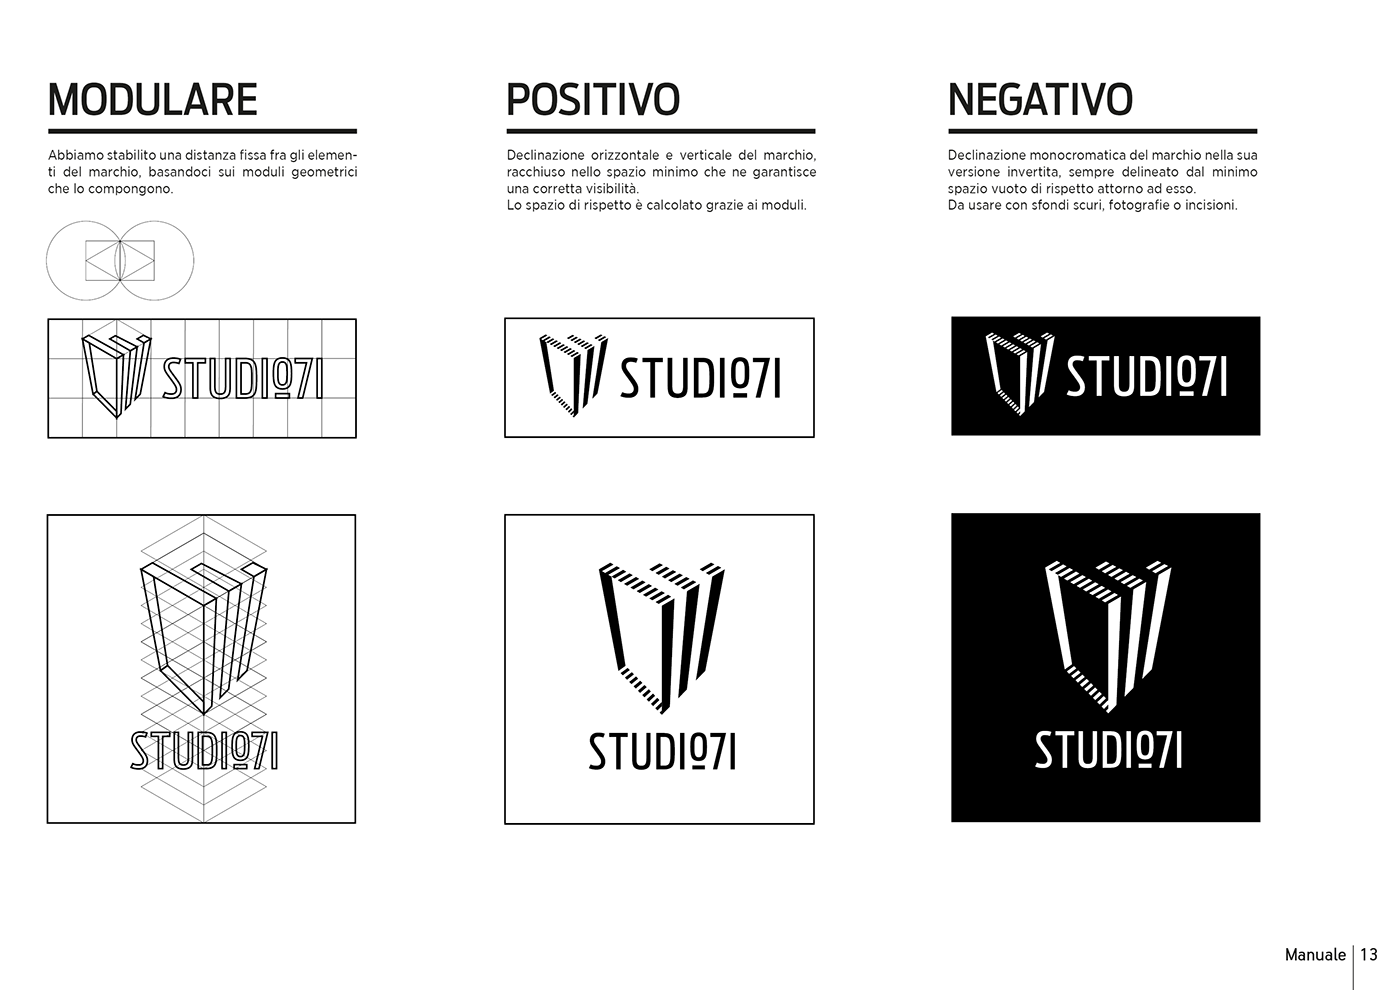 studio 071 Senigallia Sushi Design Studio Brand Image logo graphic design  interior design 